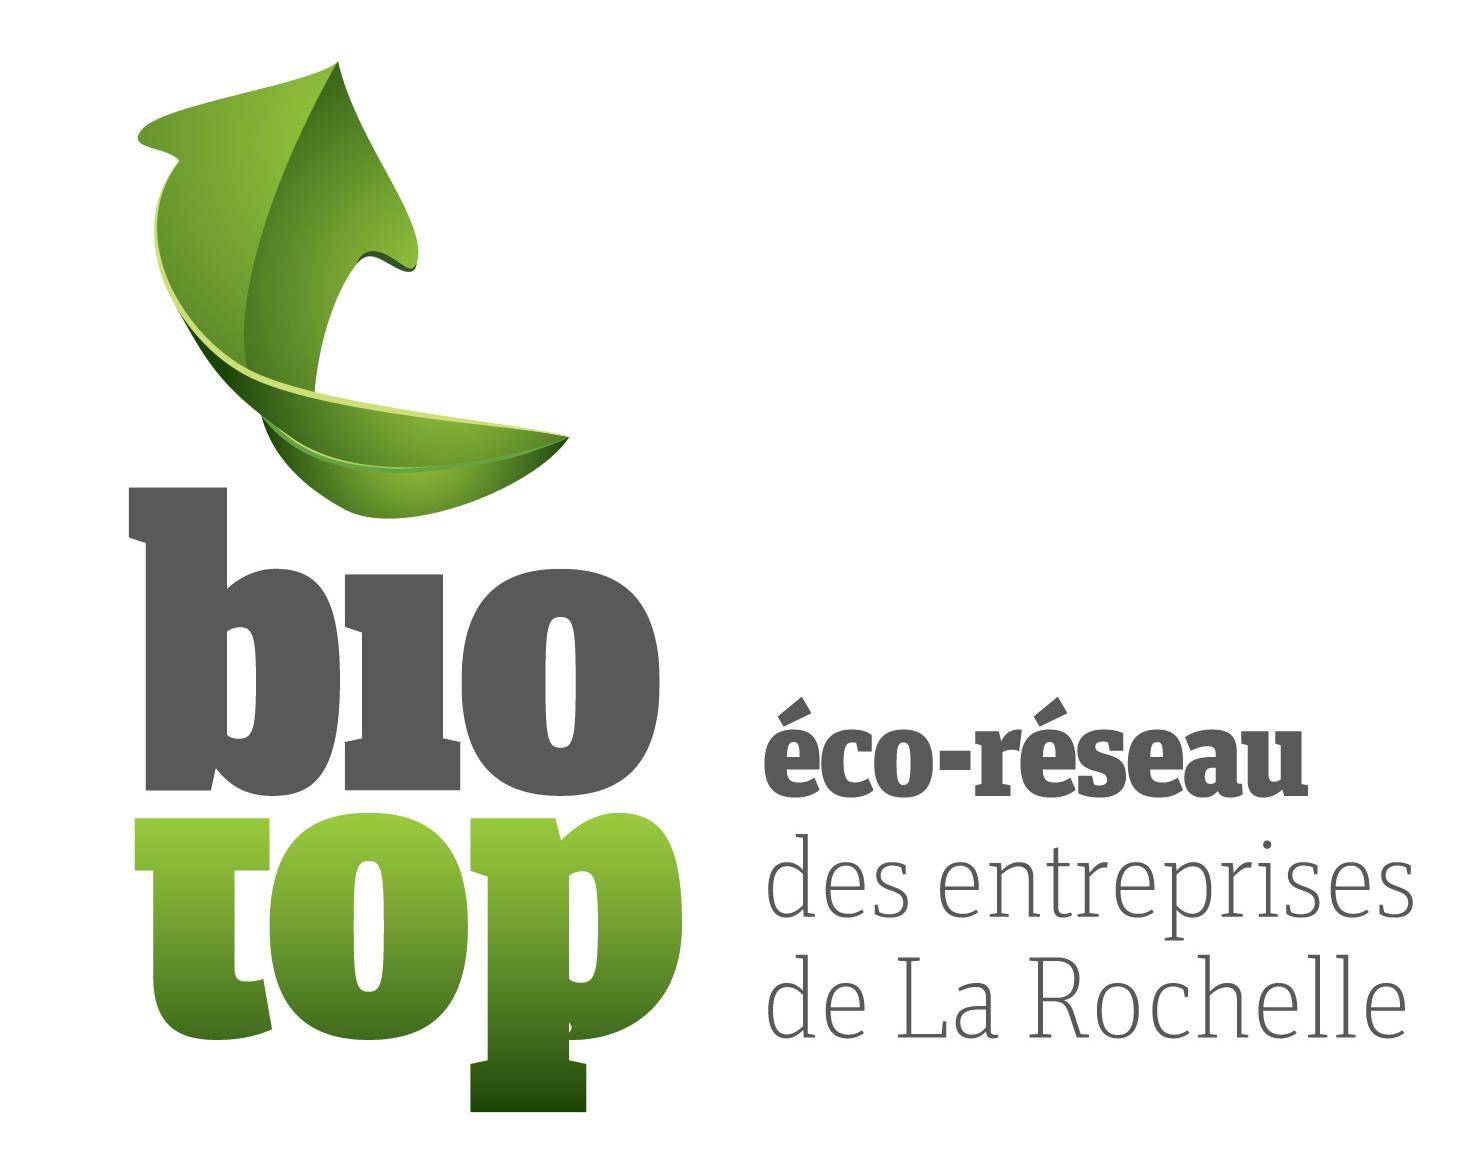 Eco-réseau Biotop